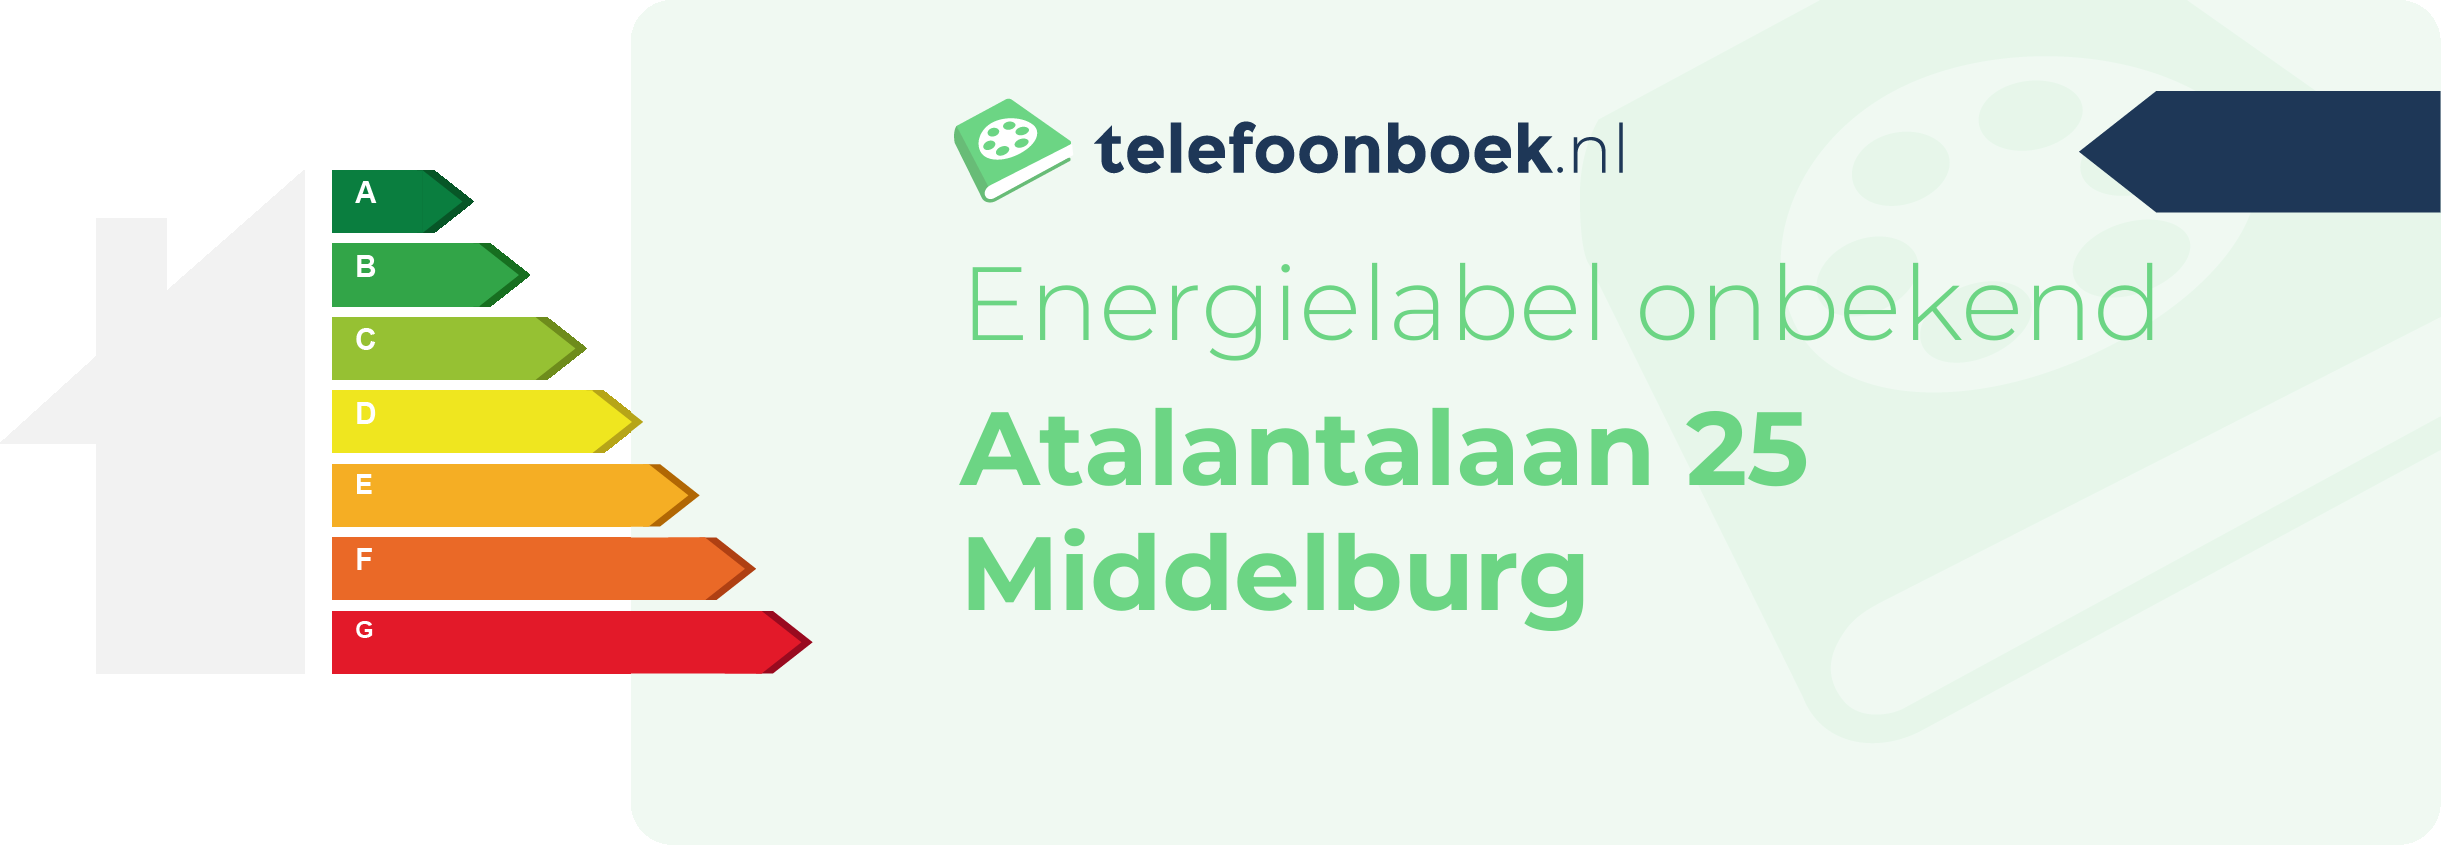 Energielabel Atalantalaan 25 Middelburg